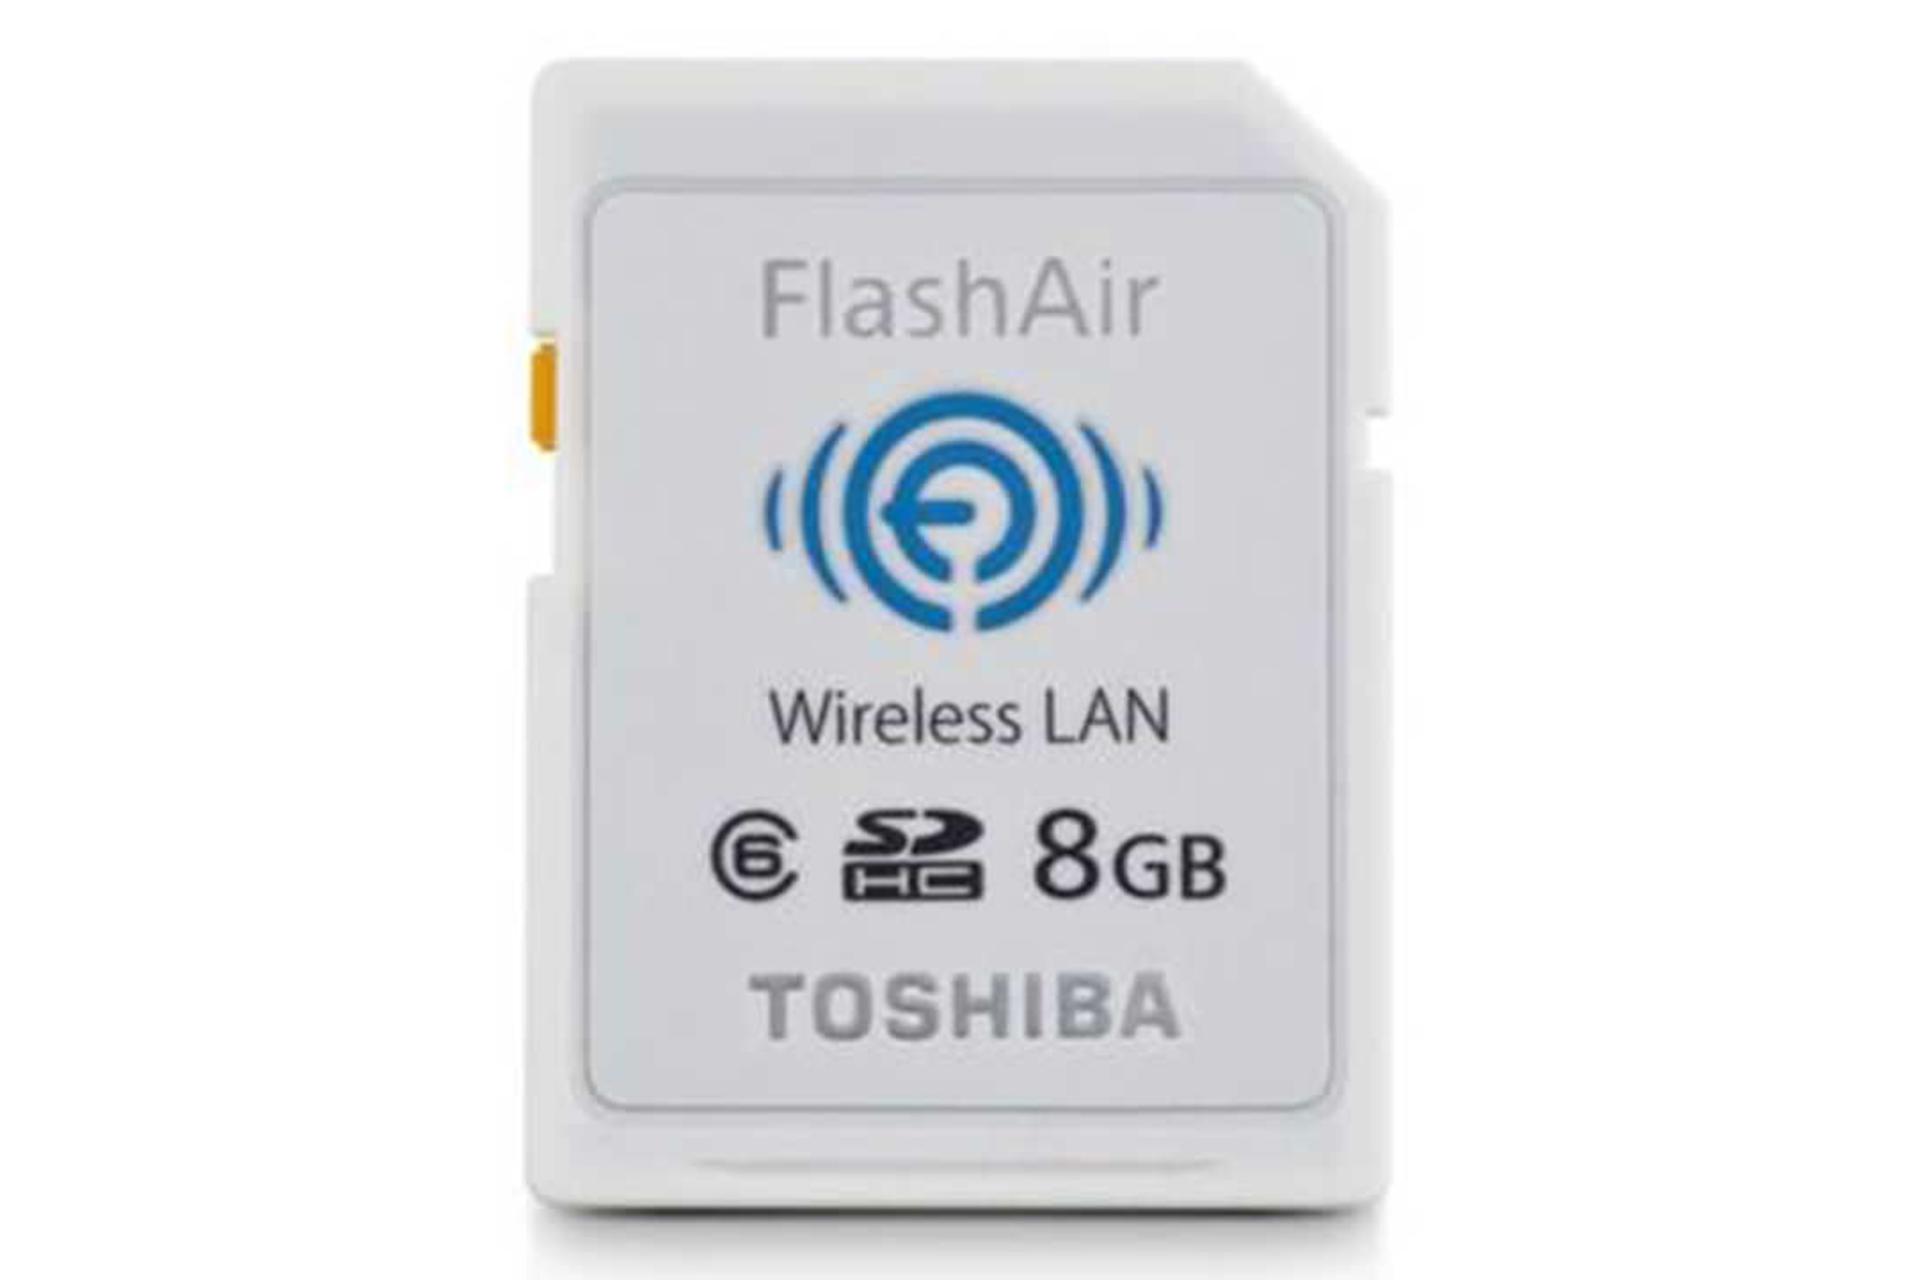 مرجع متخصصين ايران Toshiba Flash Air W-02 SD-R008GR7AL01 SDHC Class 6 8GB